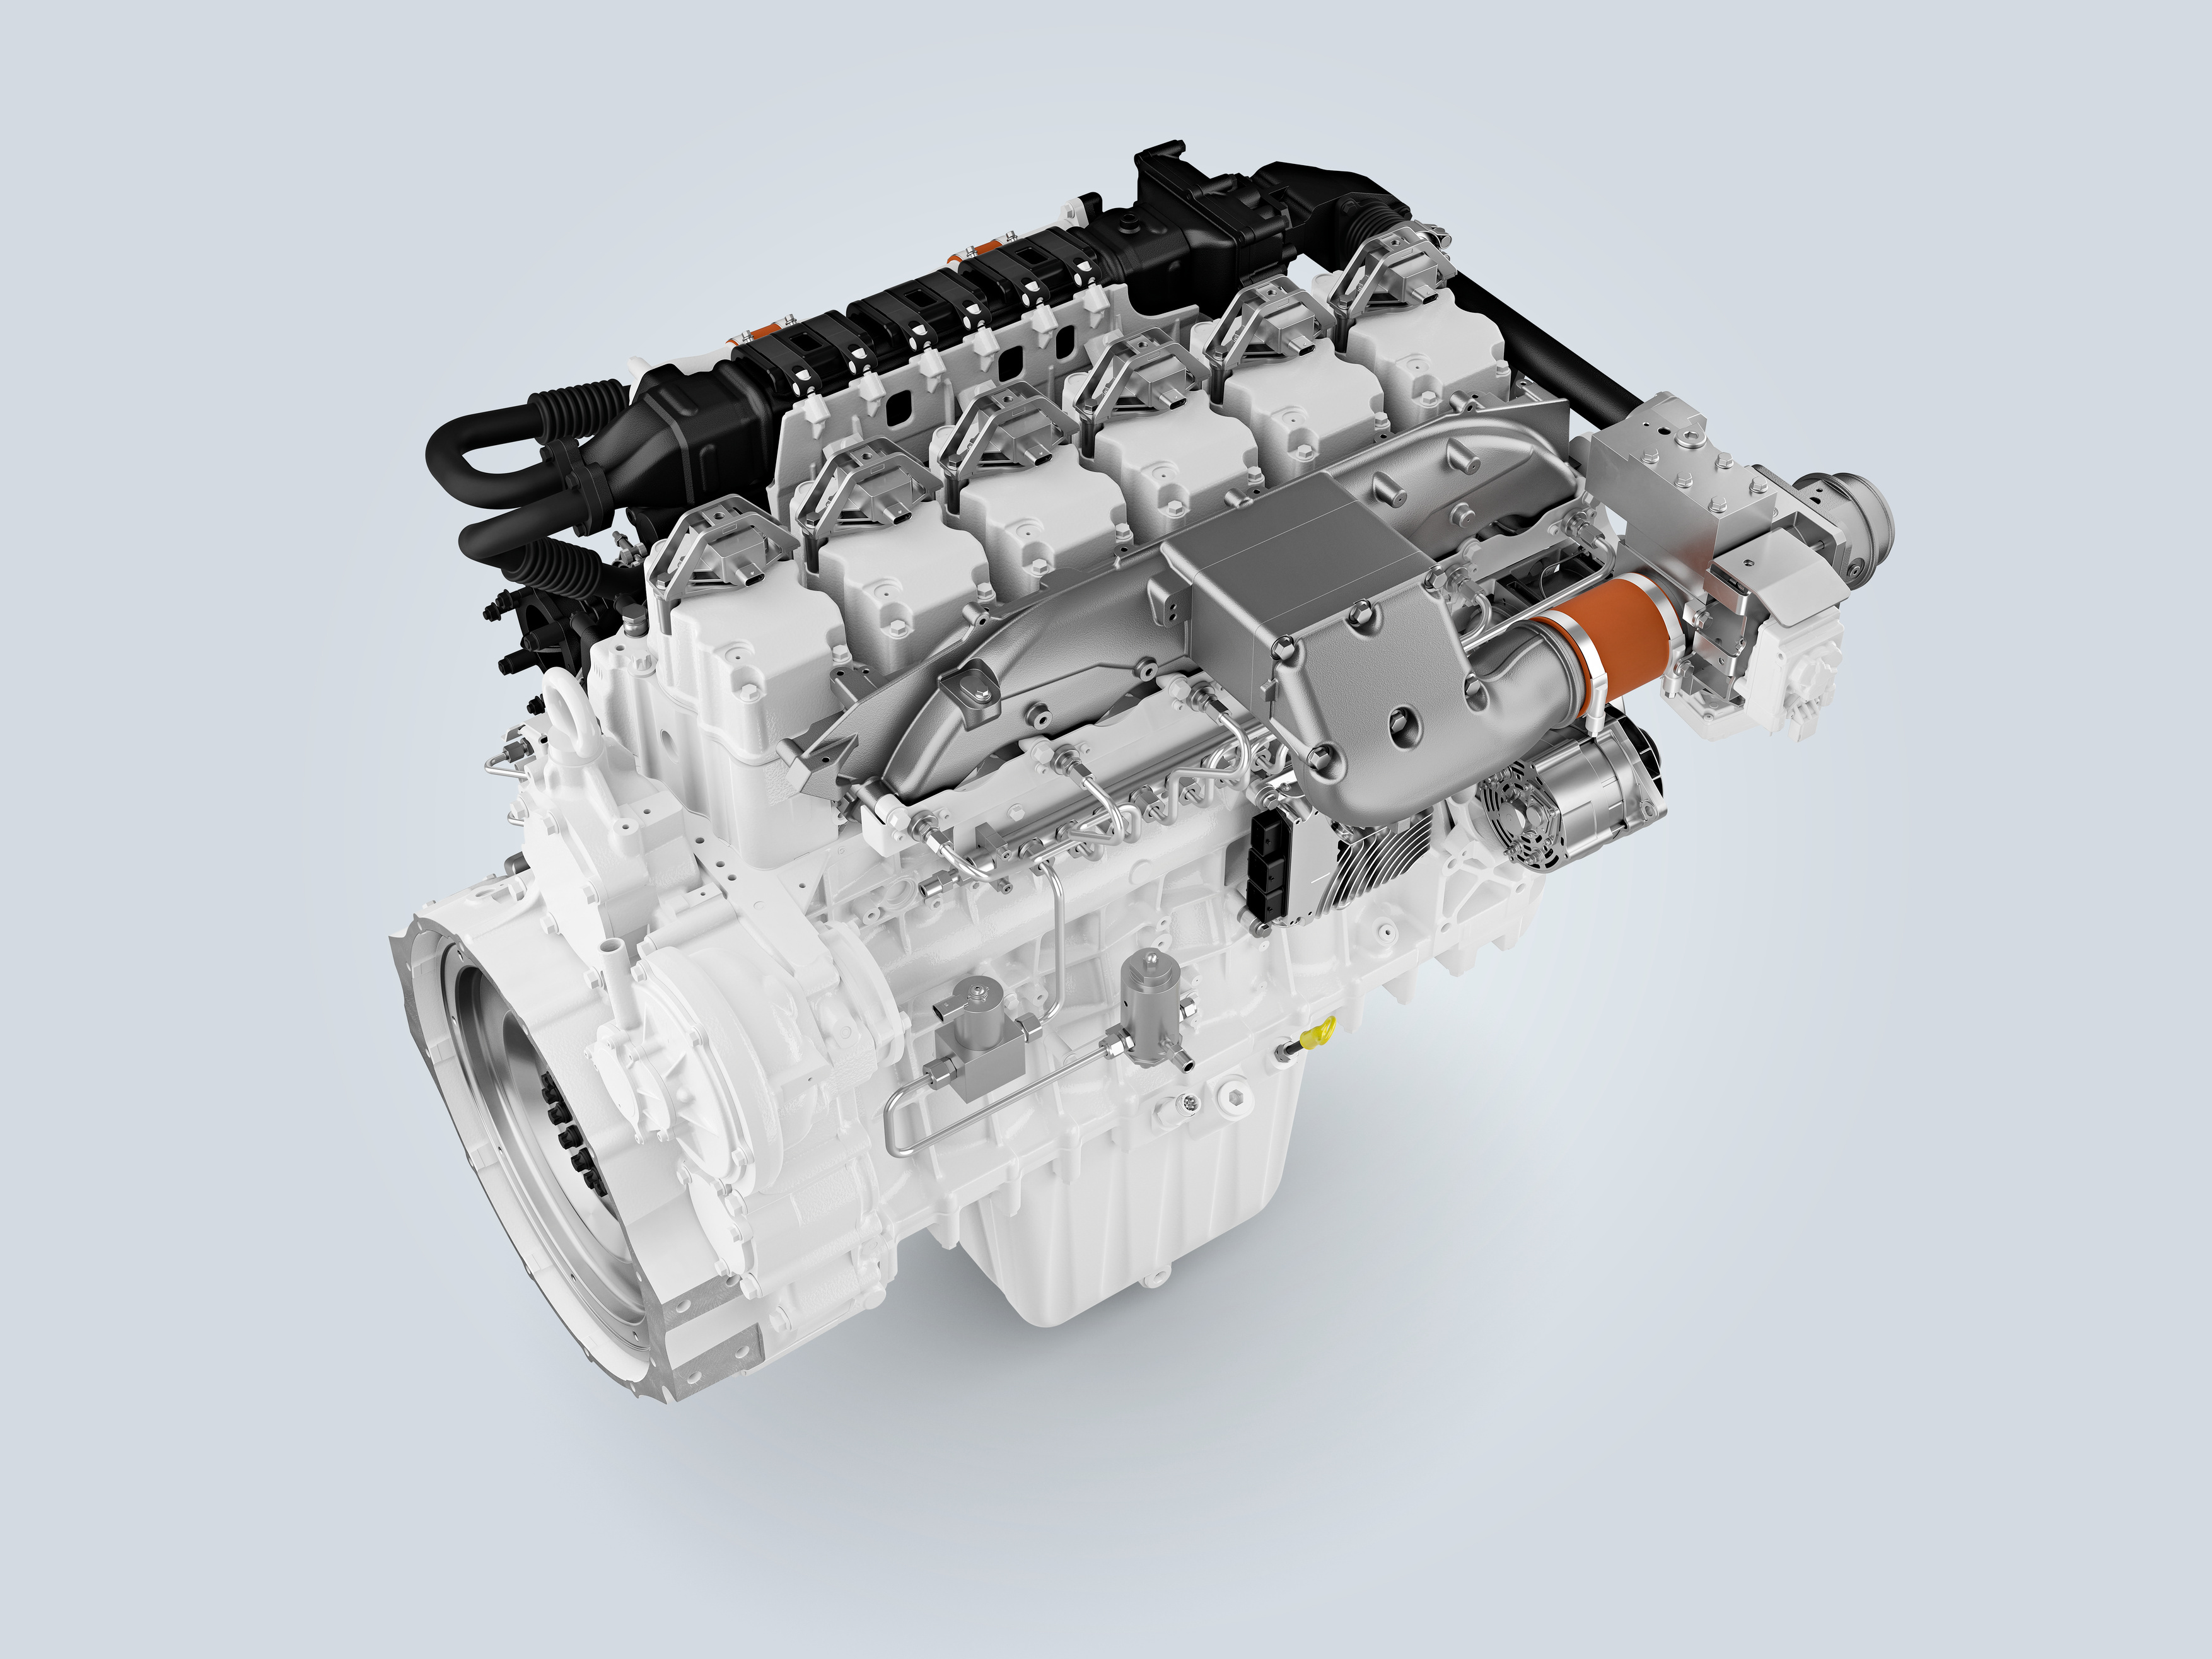 Liebherr h966 PFI hydrogen engine in development